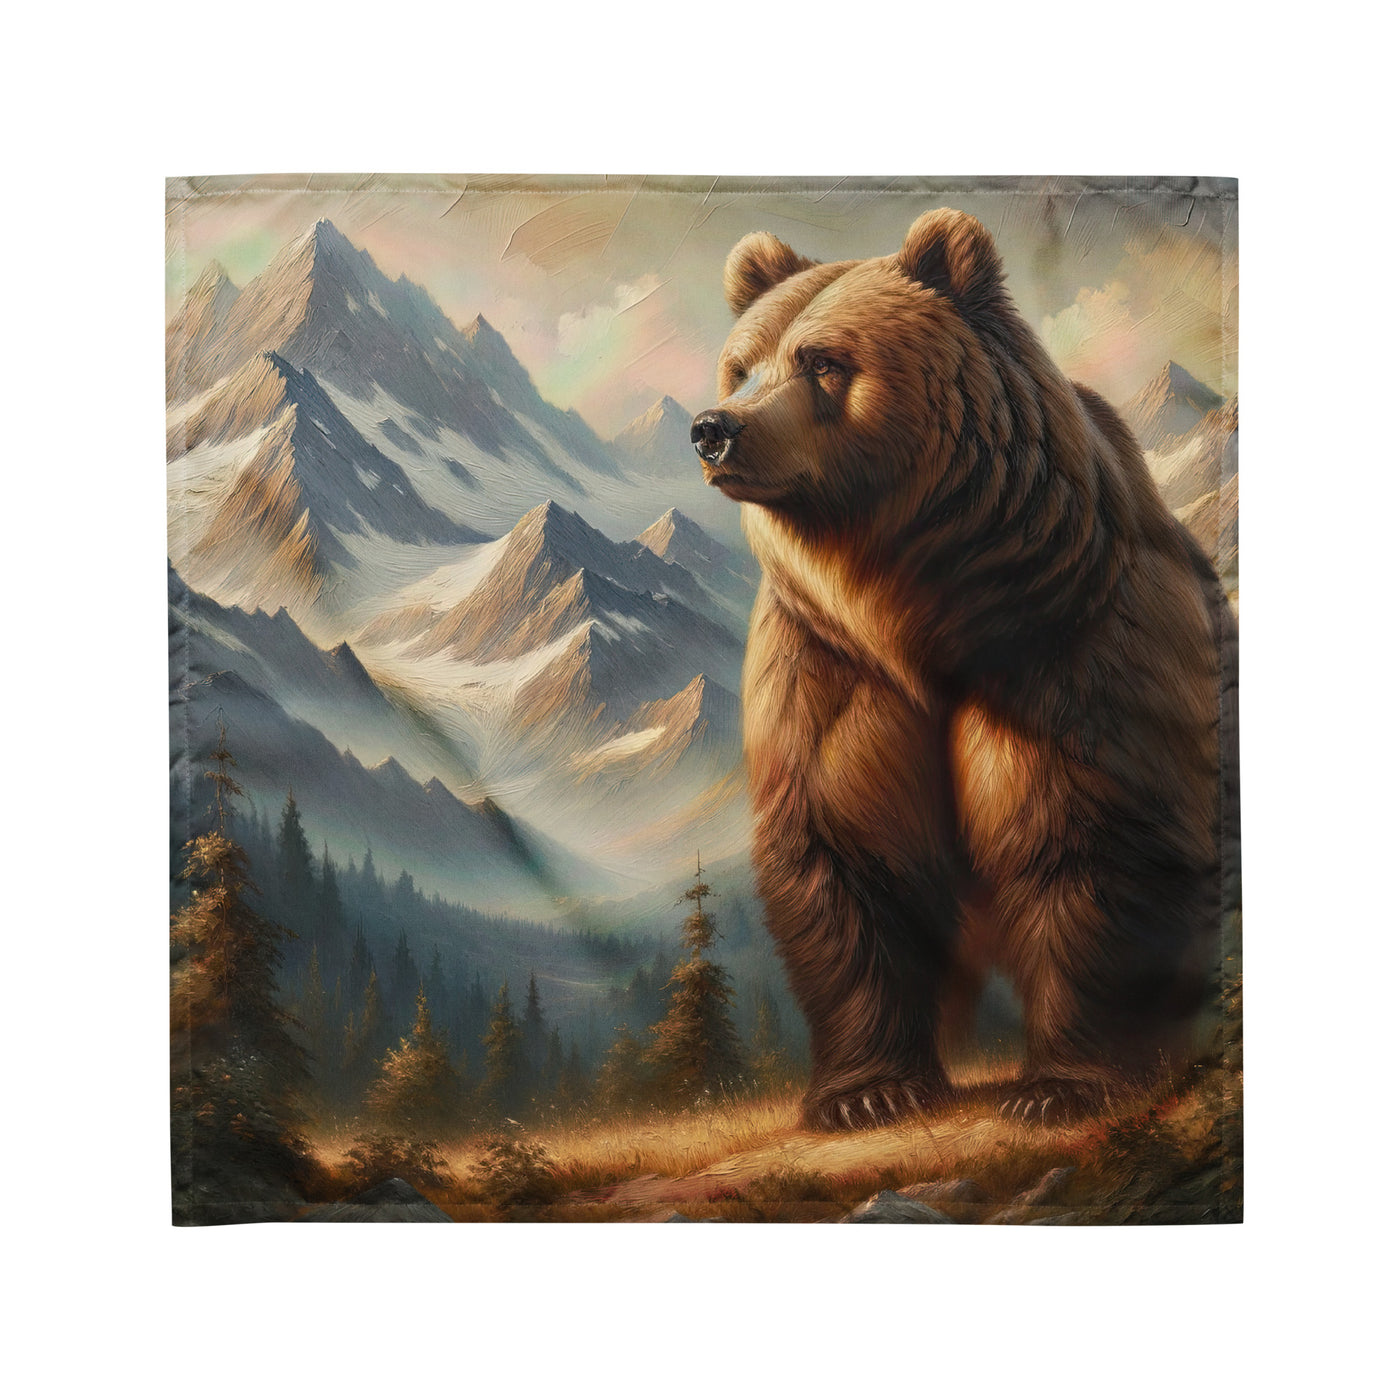 Ölgemälde eines königlichen Bären vor der majestätischen Alpenkulisse - Bandana (All-Over Print) camping xxx yyy zzz M